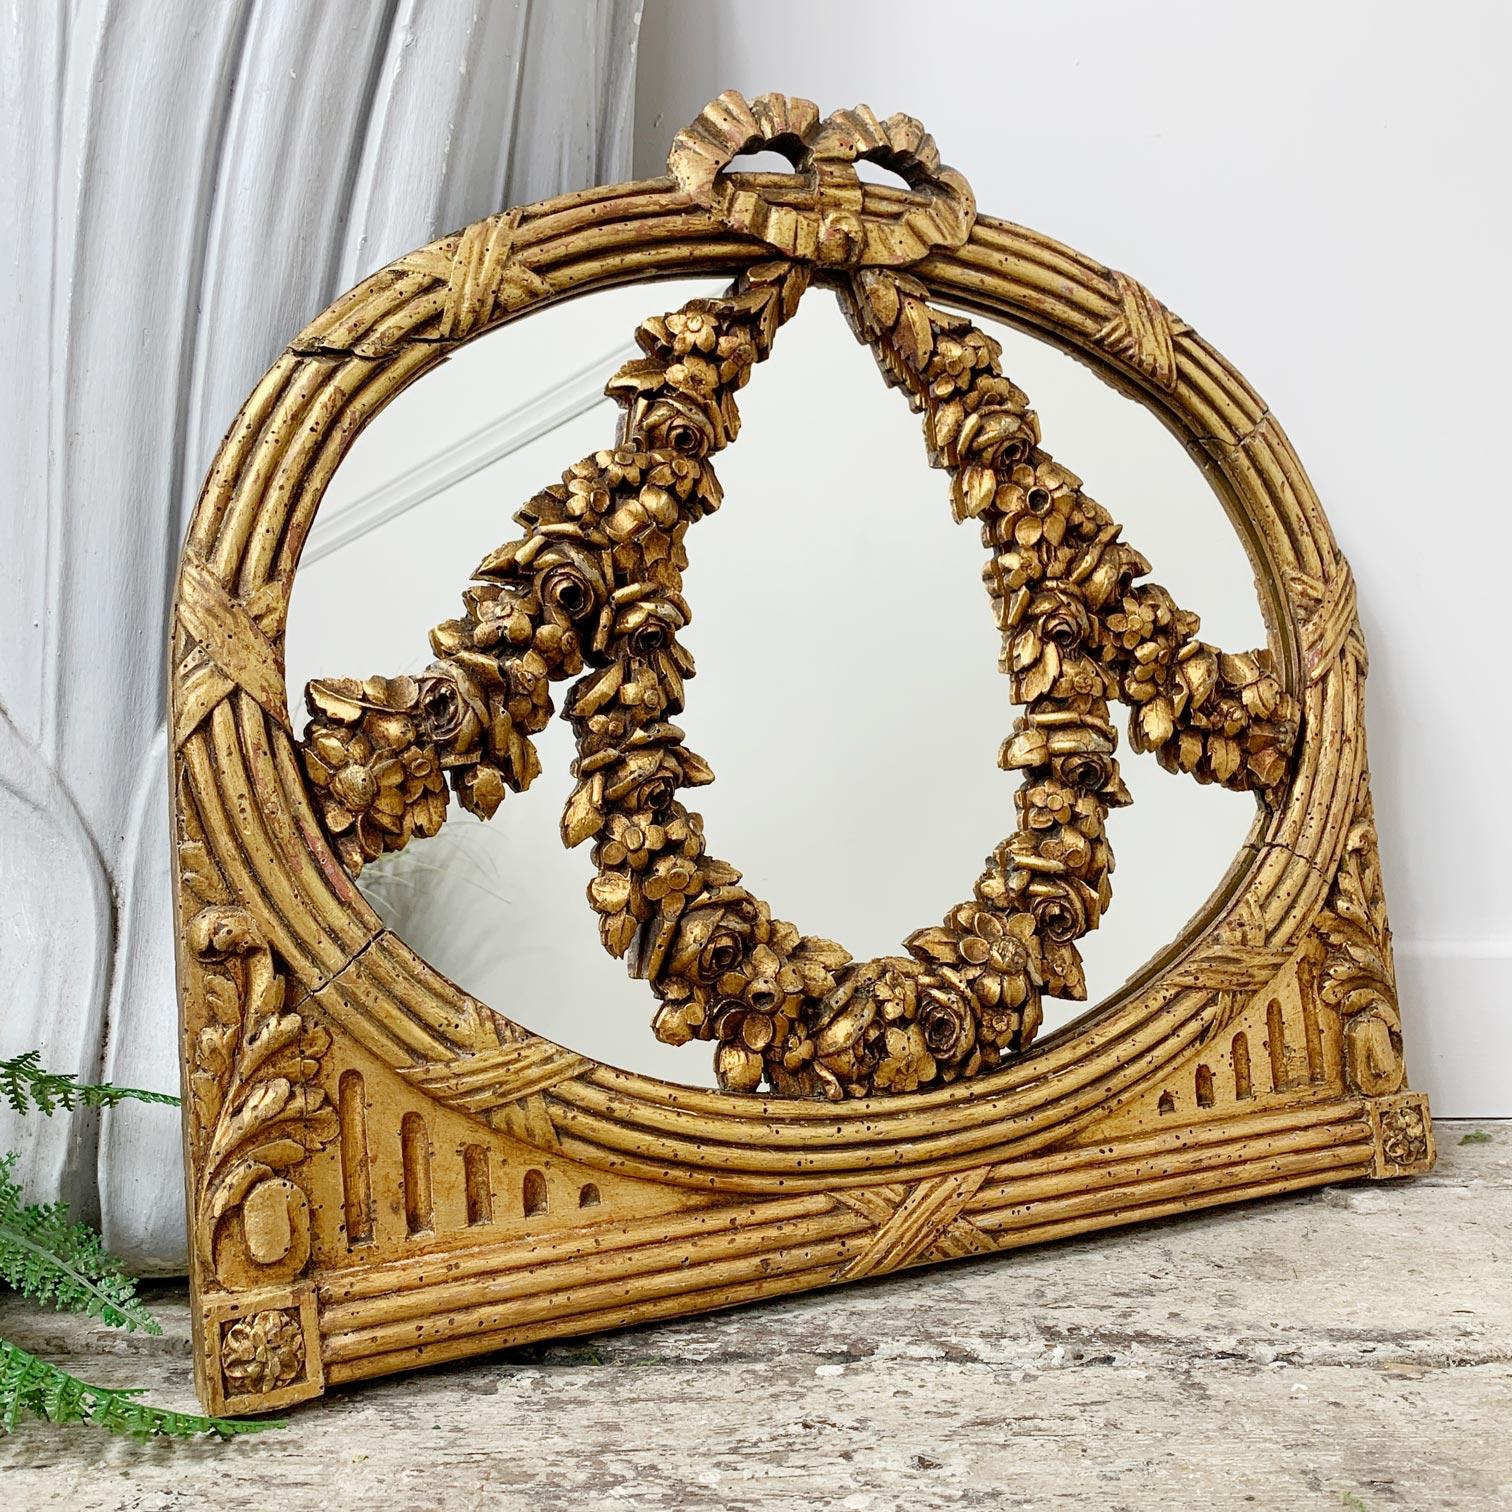 Magnifique et charmant miroir de la fin du XVIIIe siècle, le cadre en bois sculpté et doré, avec des guirlandes florales très inhabituelles et minutieusement sculptées à l'avant, qui s'étendent sur la face du miroir.

La plaque de verre du miroir